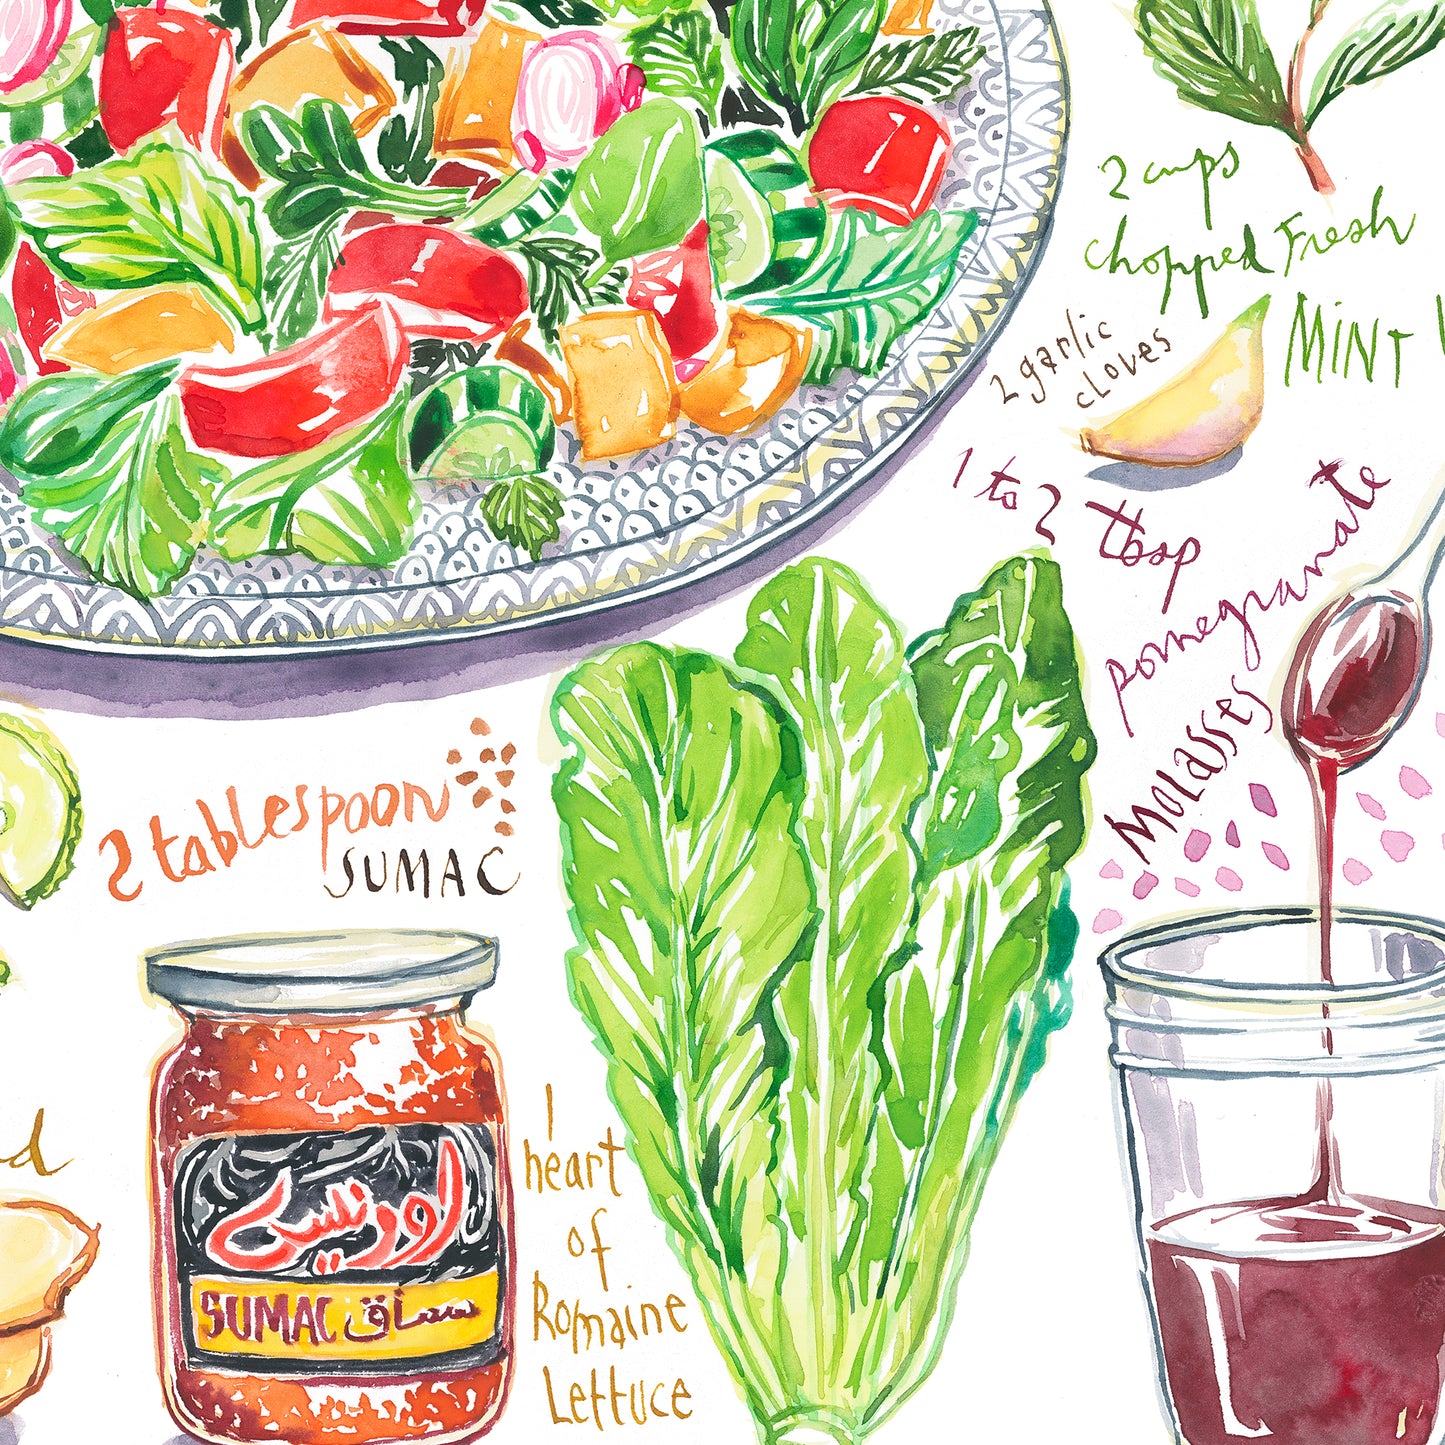 Fattoush Salad recipe